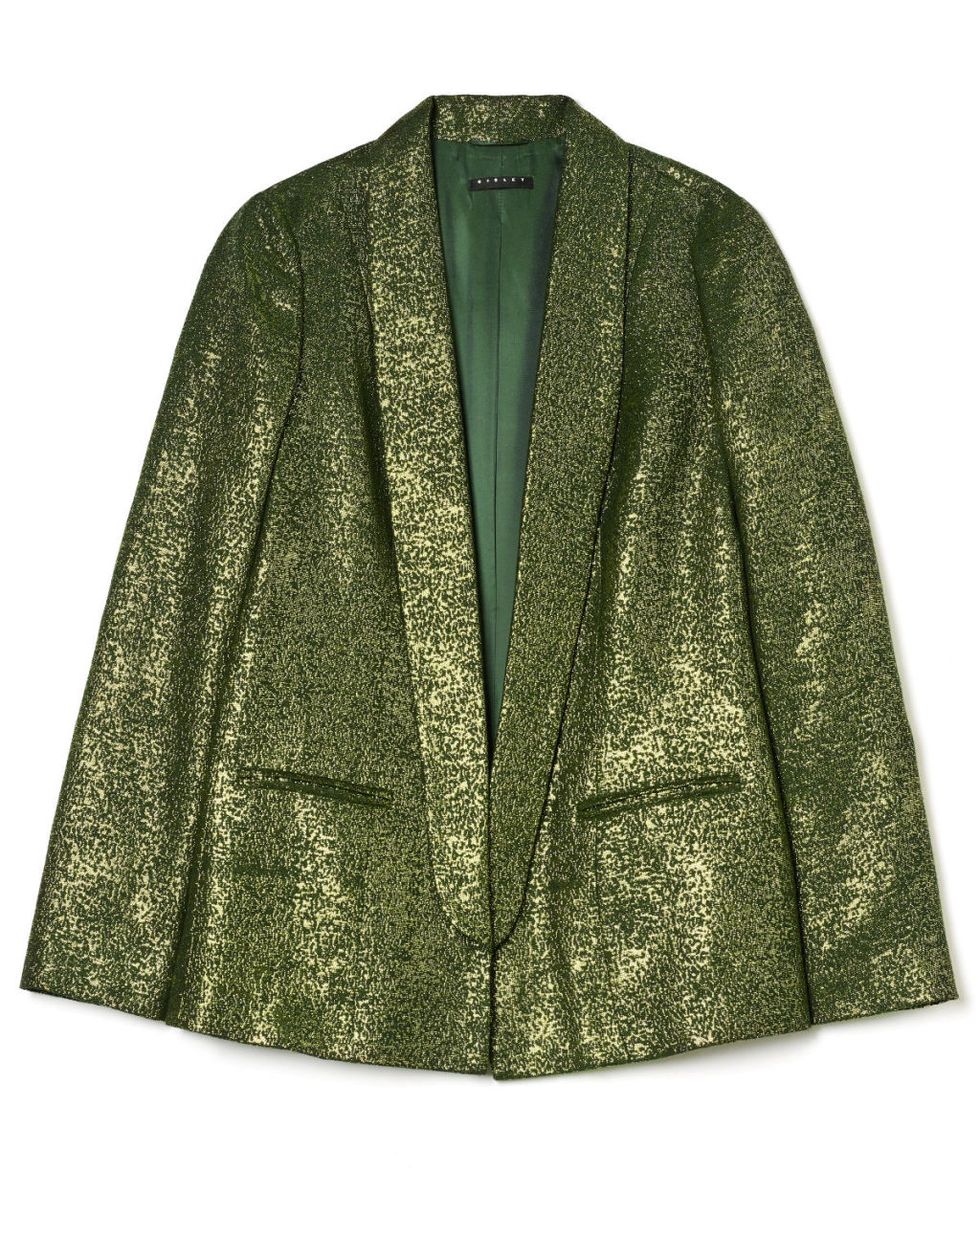 giacche di tendenza autunno inverno 2017-2018 come il blazer in lurex di Sisley